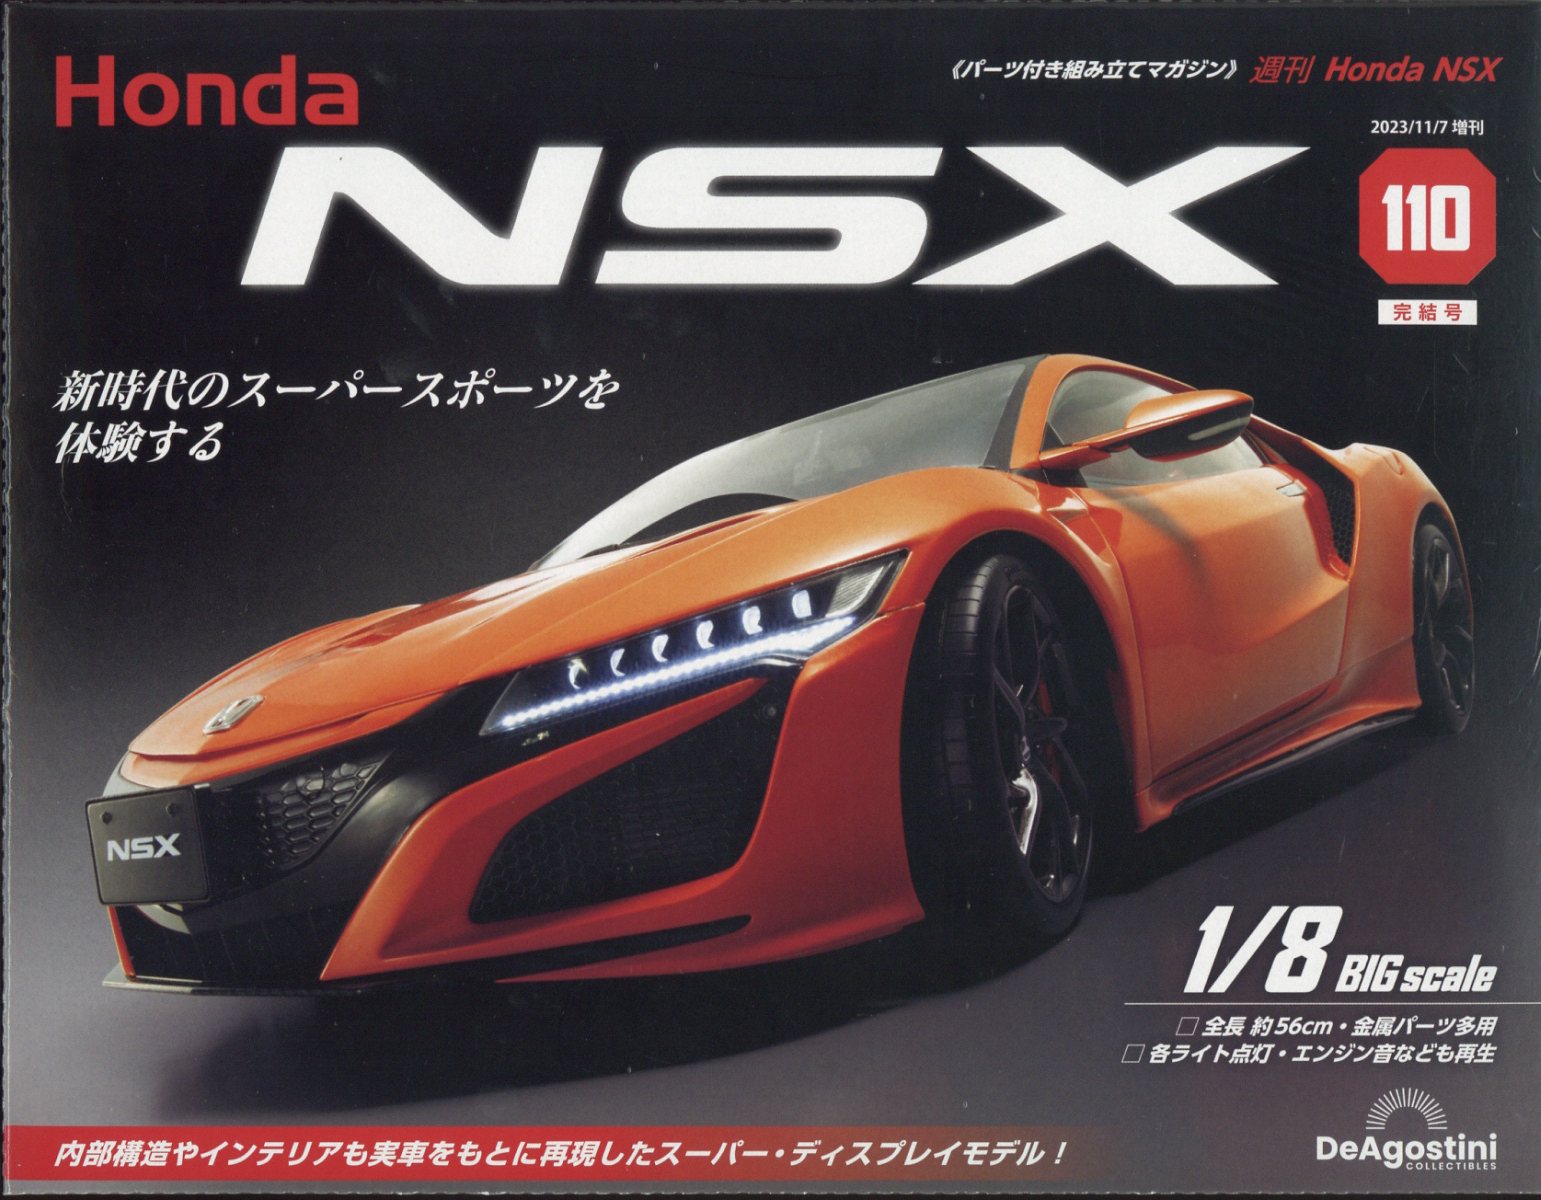 楽天ブックス: 週刊 Honda NSX (ホンダエヌエスエックス) 2023年 11/7